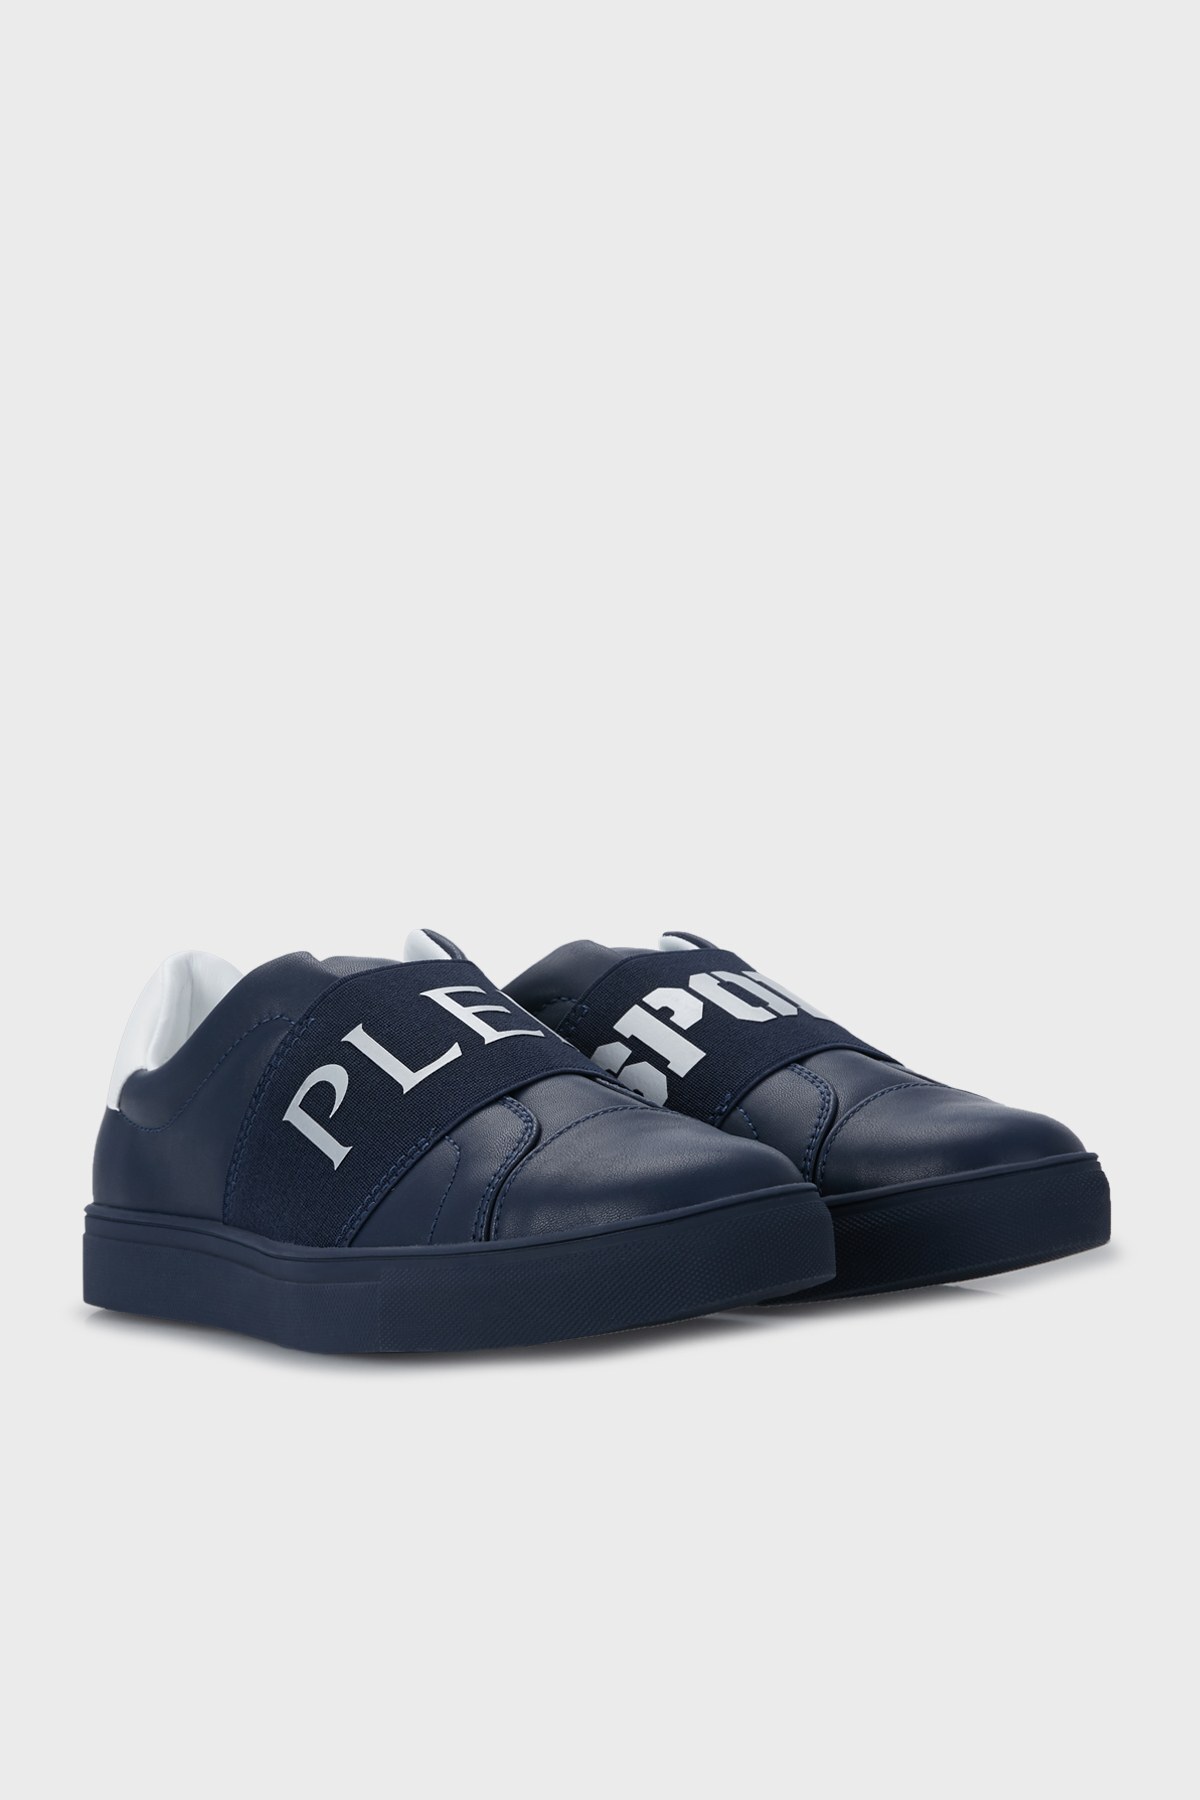 Plein Sport Sneaker Erkek Ayakkabı SIPS70885 LACİVERT